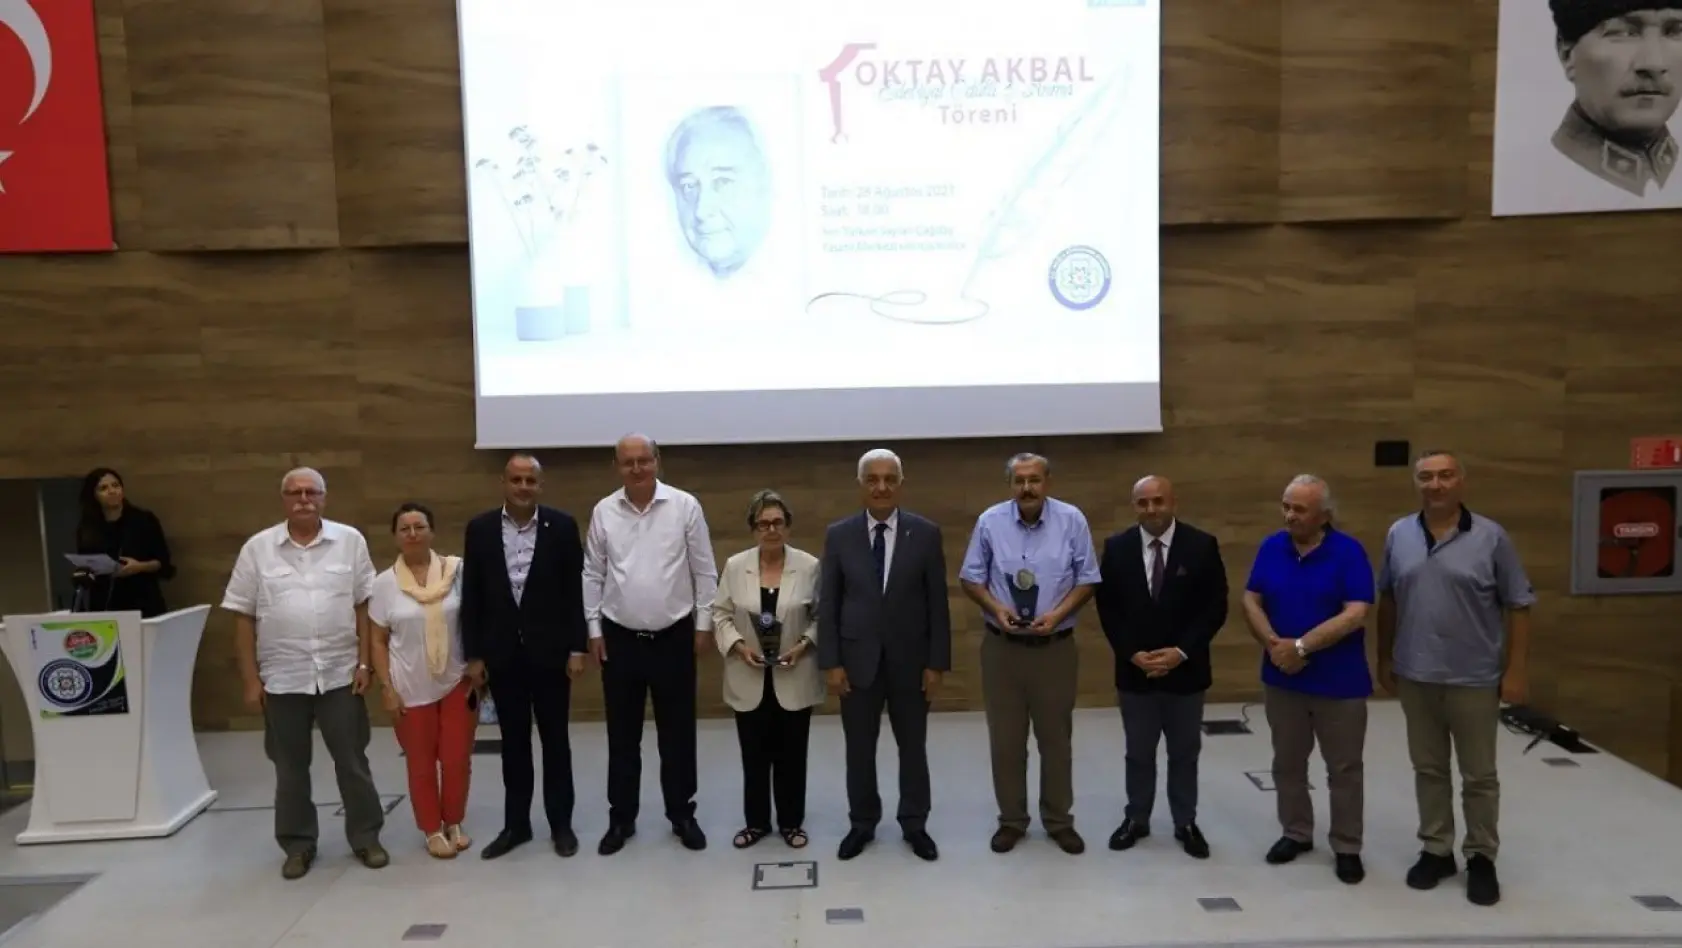 Muğla Büyükşehir Belediyesi tarafından Oktay Akbal ödül töreni düzenlenecek